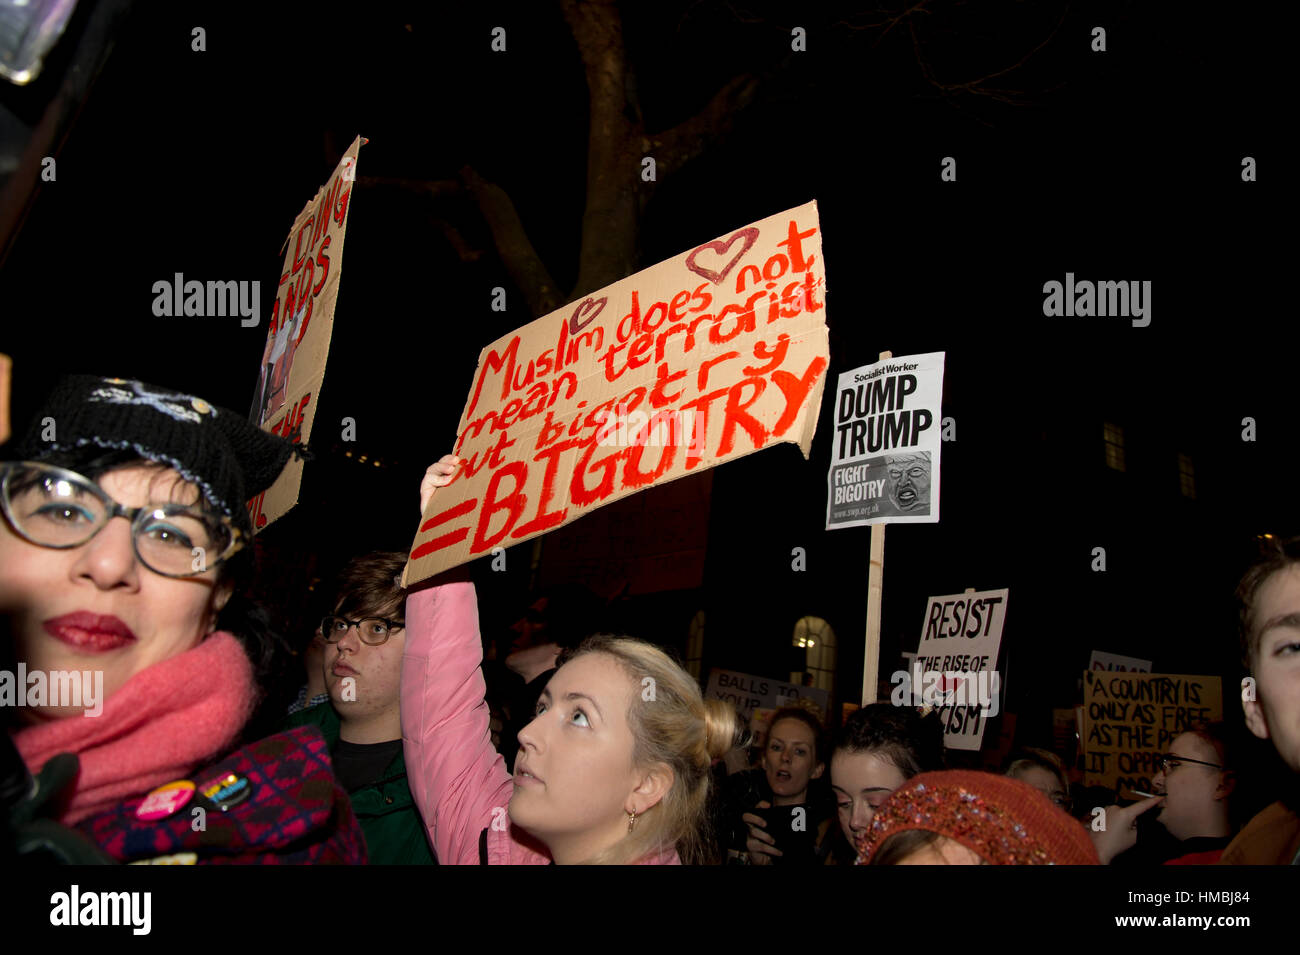 Whitehall. Protest gegen Donald Trump Reiseverbot für Muslime. Eine Frau hält einen Schild Spruch "Muslim bedeutet nicht, dass Terroristen es bedeutet Bigotterie". Stockfoto